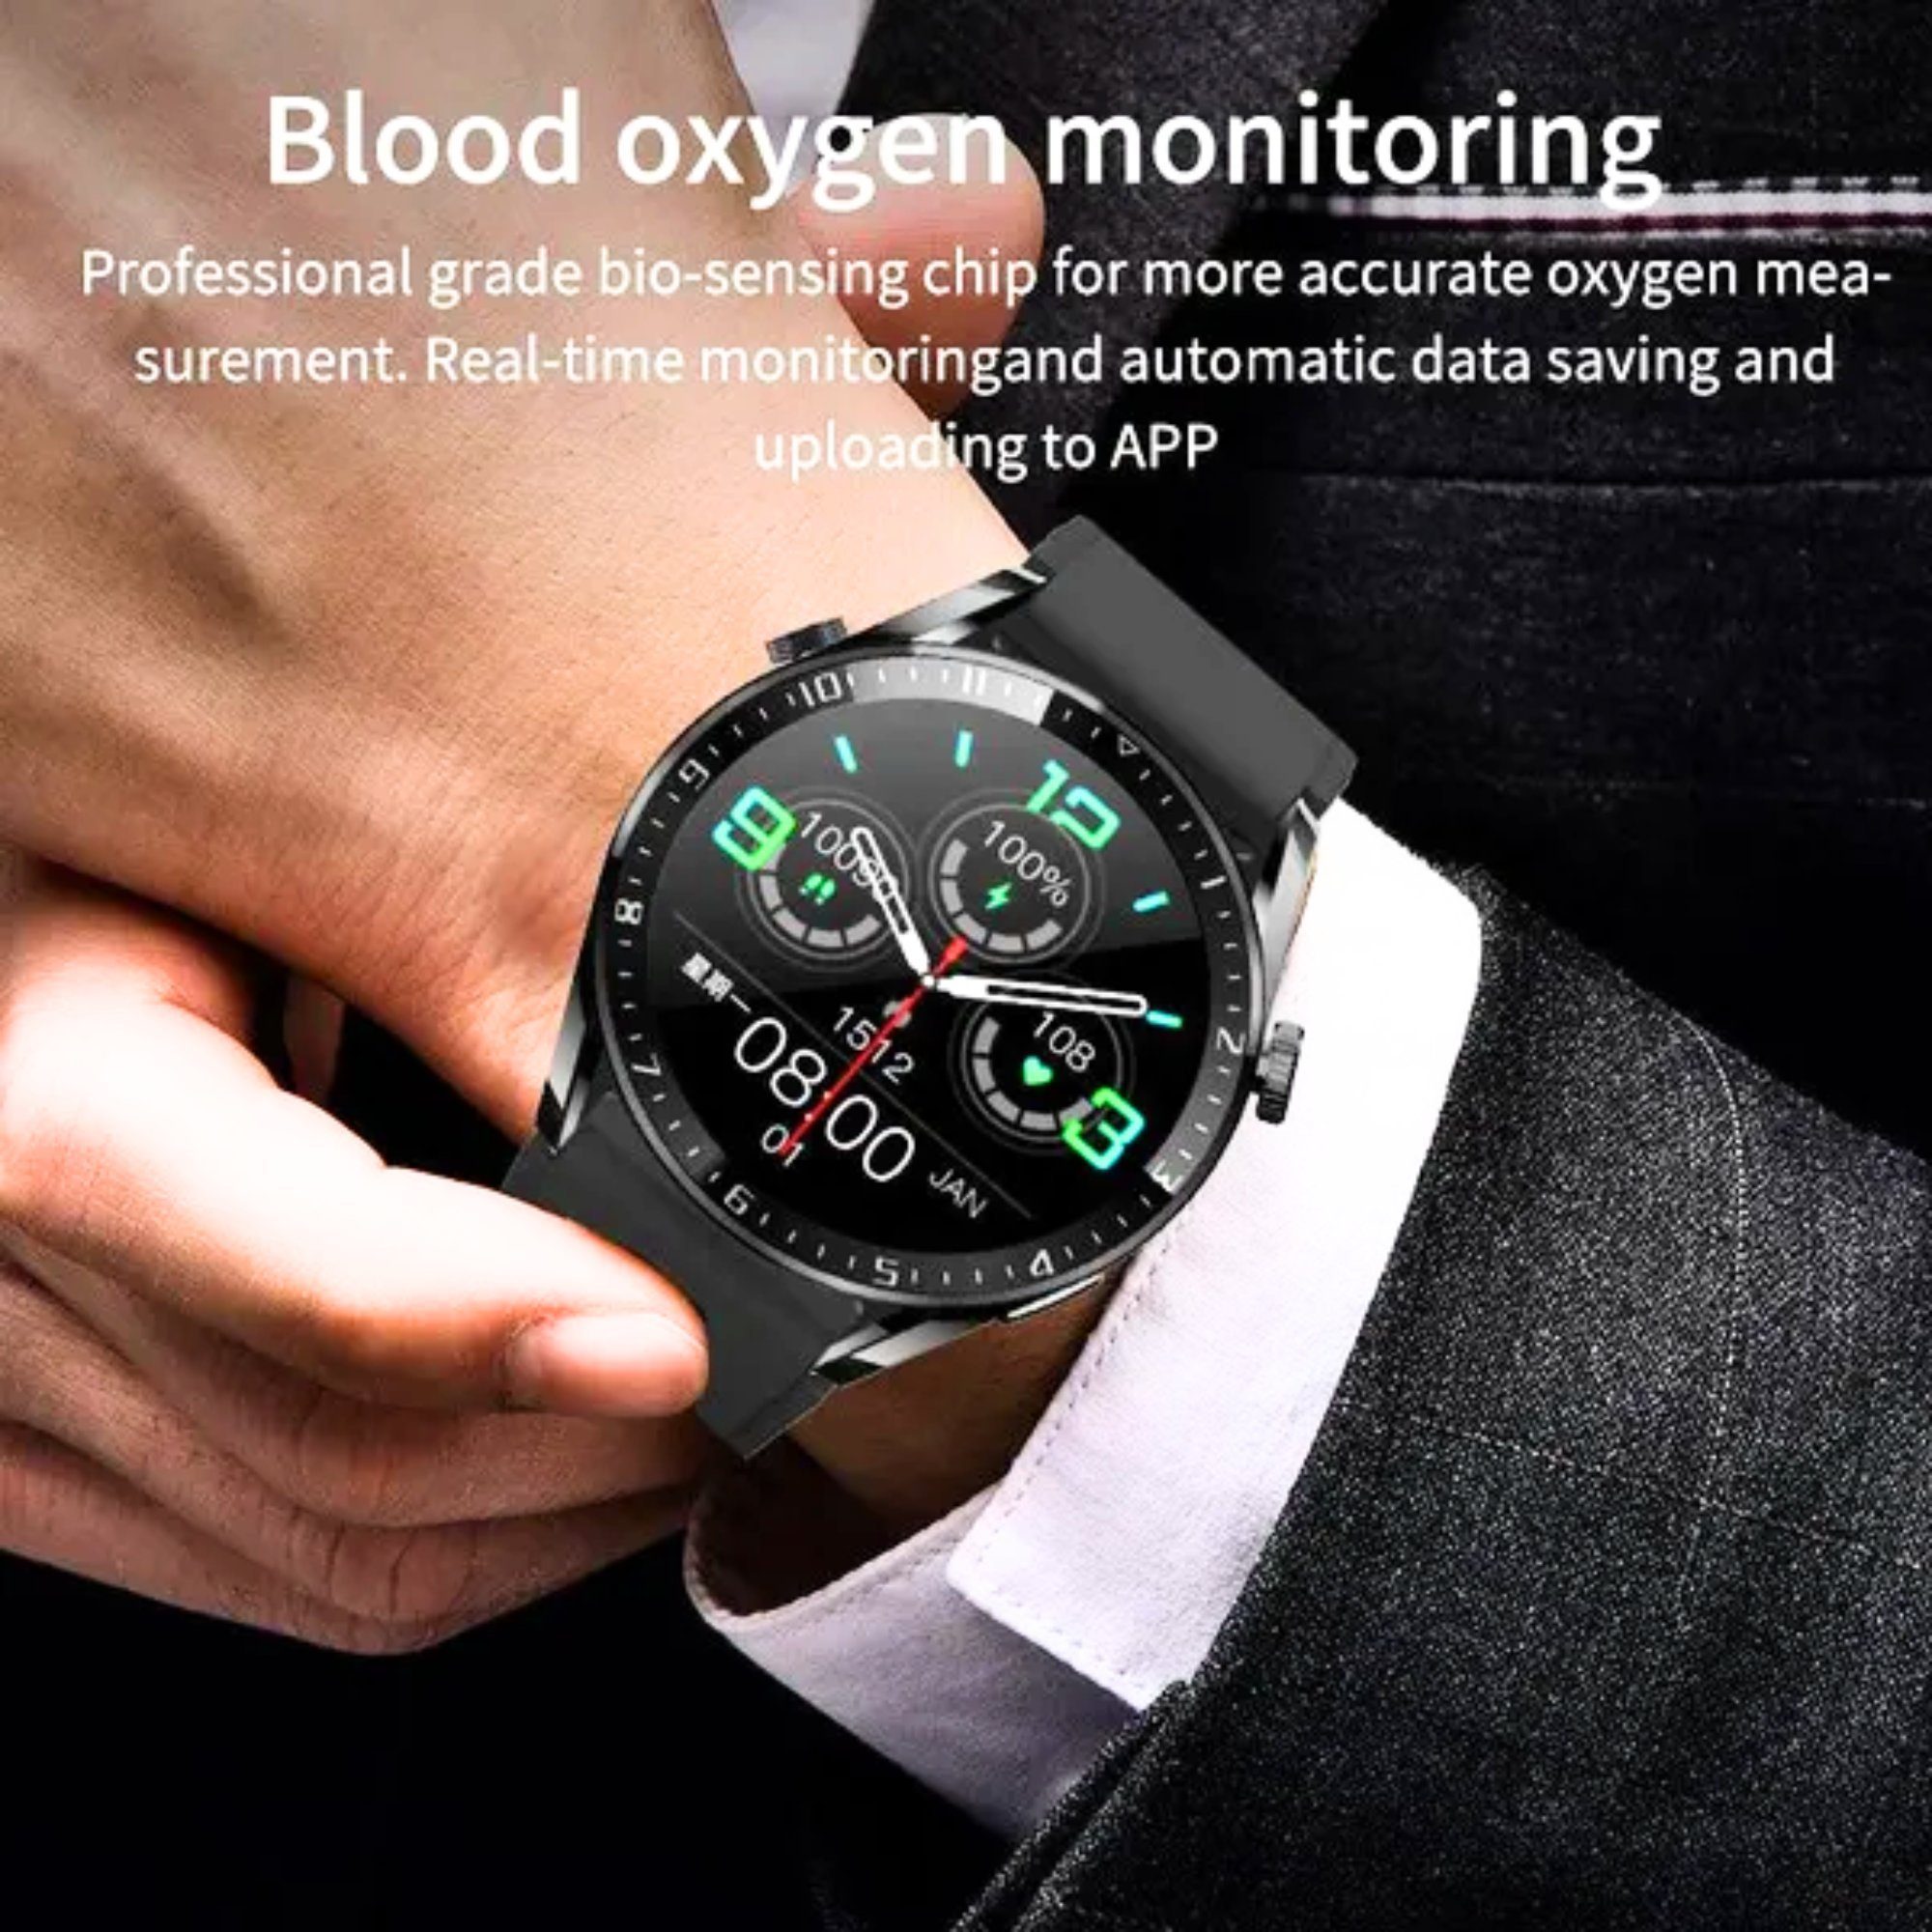 Manike HK85 Elegant Blutdruckmonitor Set, Call Smartwatch Herzfrequenzmesser, - Ladenkabel, (1,69" cm) von Touchscreen wechselband Silikon mit Analyse weichem HD aus Herzfrequenzmessung und Spar BT EKG-Daten, AMOLED Voll Blutdruckmessgerät